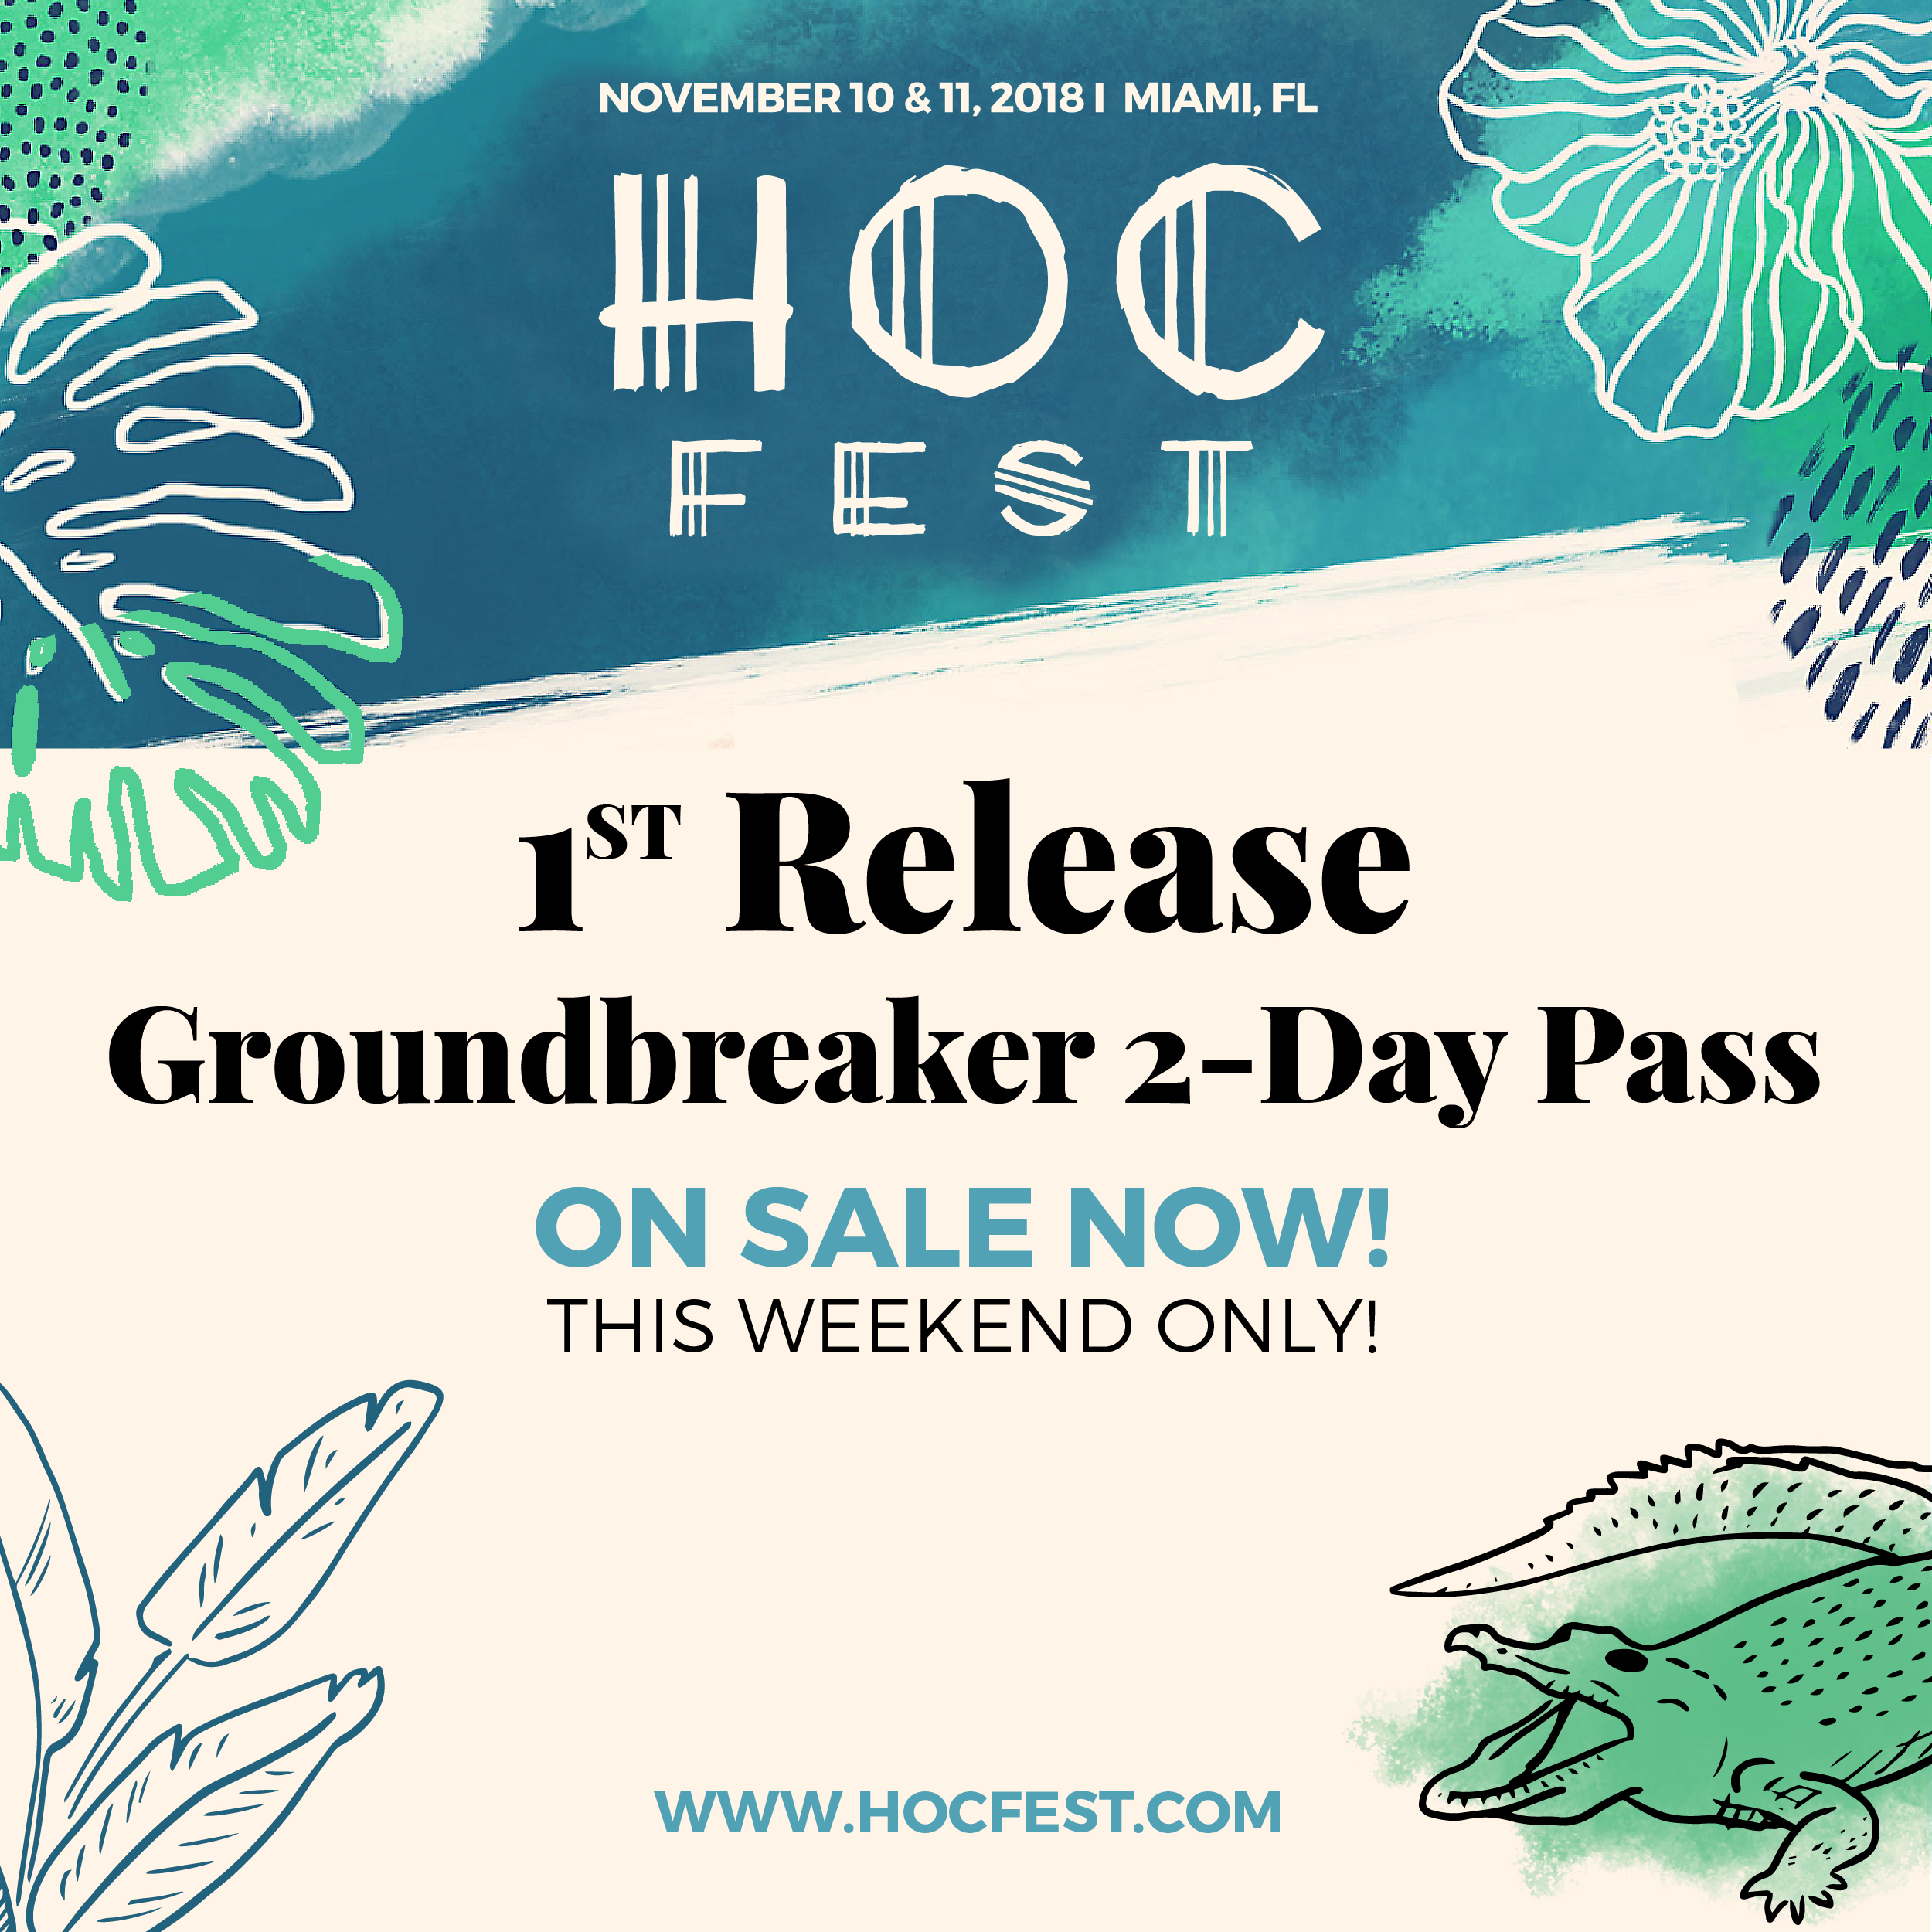 HOC Fest 2018